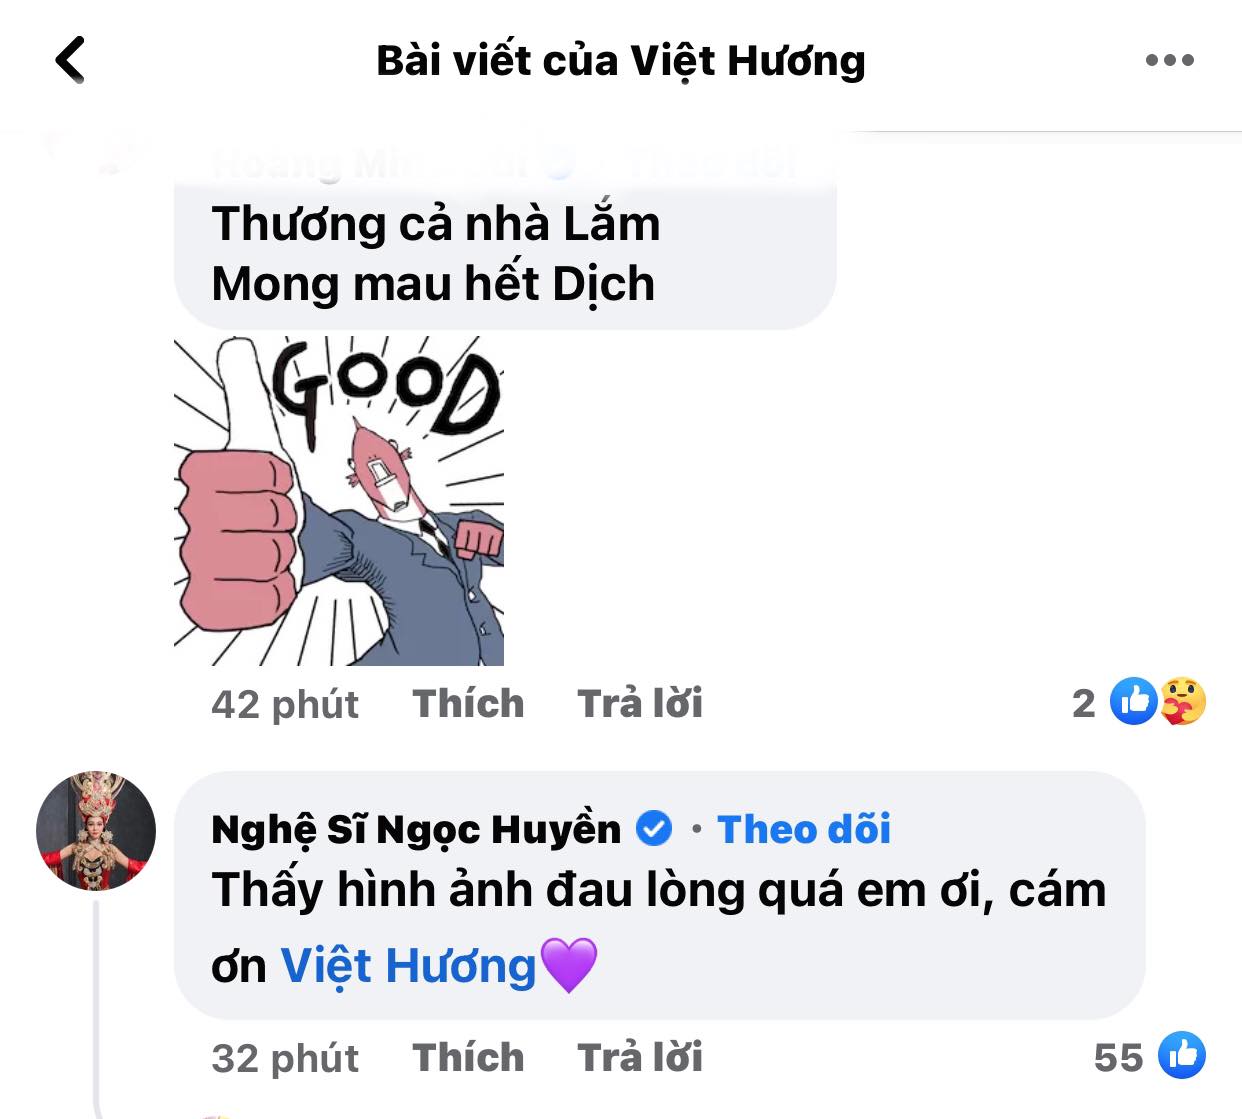 Viet-huong-tiep-tuc-ho-tro-thuc-pham-cho-nguoi-dan-sai-gon-nhan-duoc-con-mua-loi-khen-tu-khan-gia-2